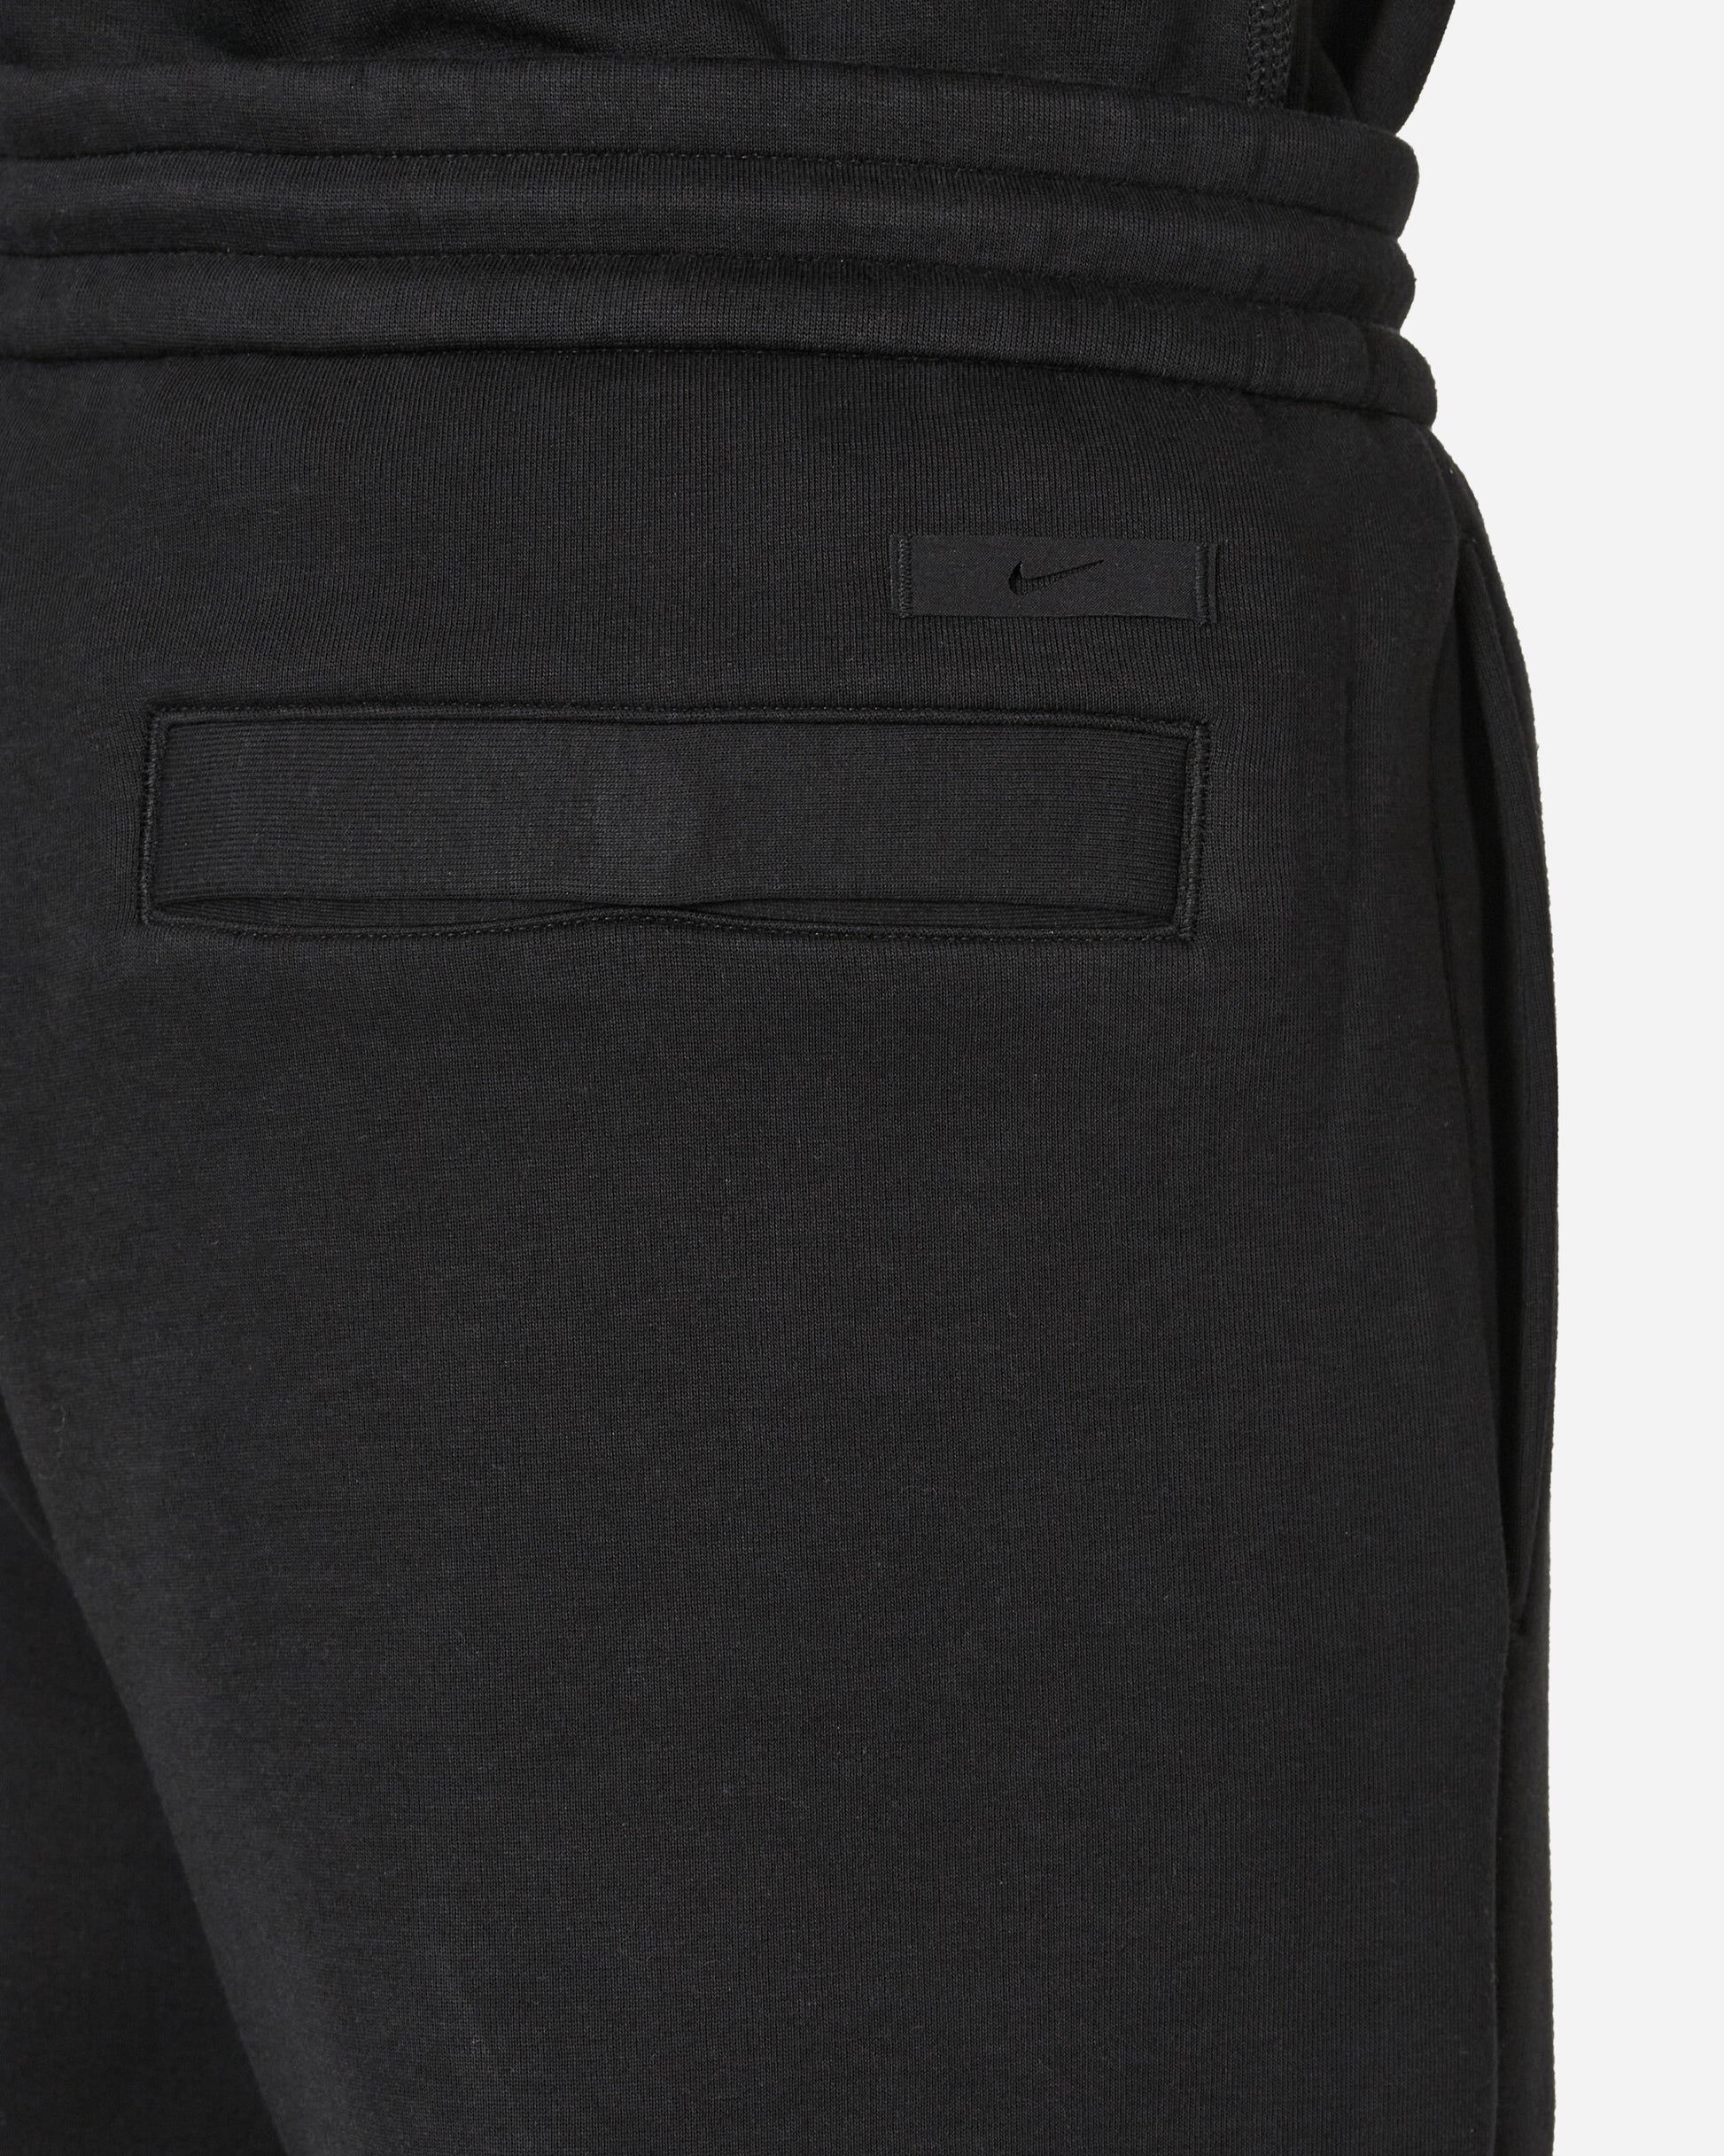 Nike M Nk Tch Flc Tailored Pant Black/Black Pants Sweatpants FB8163-010